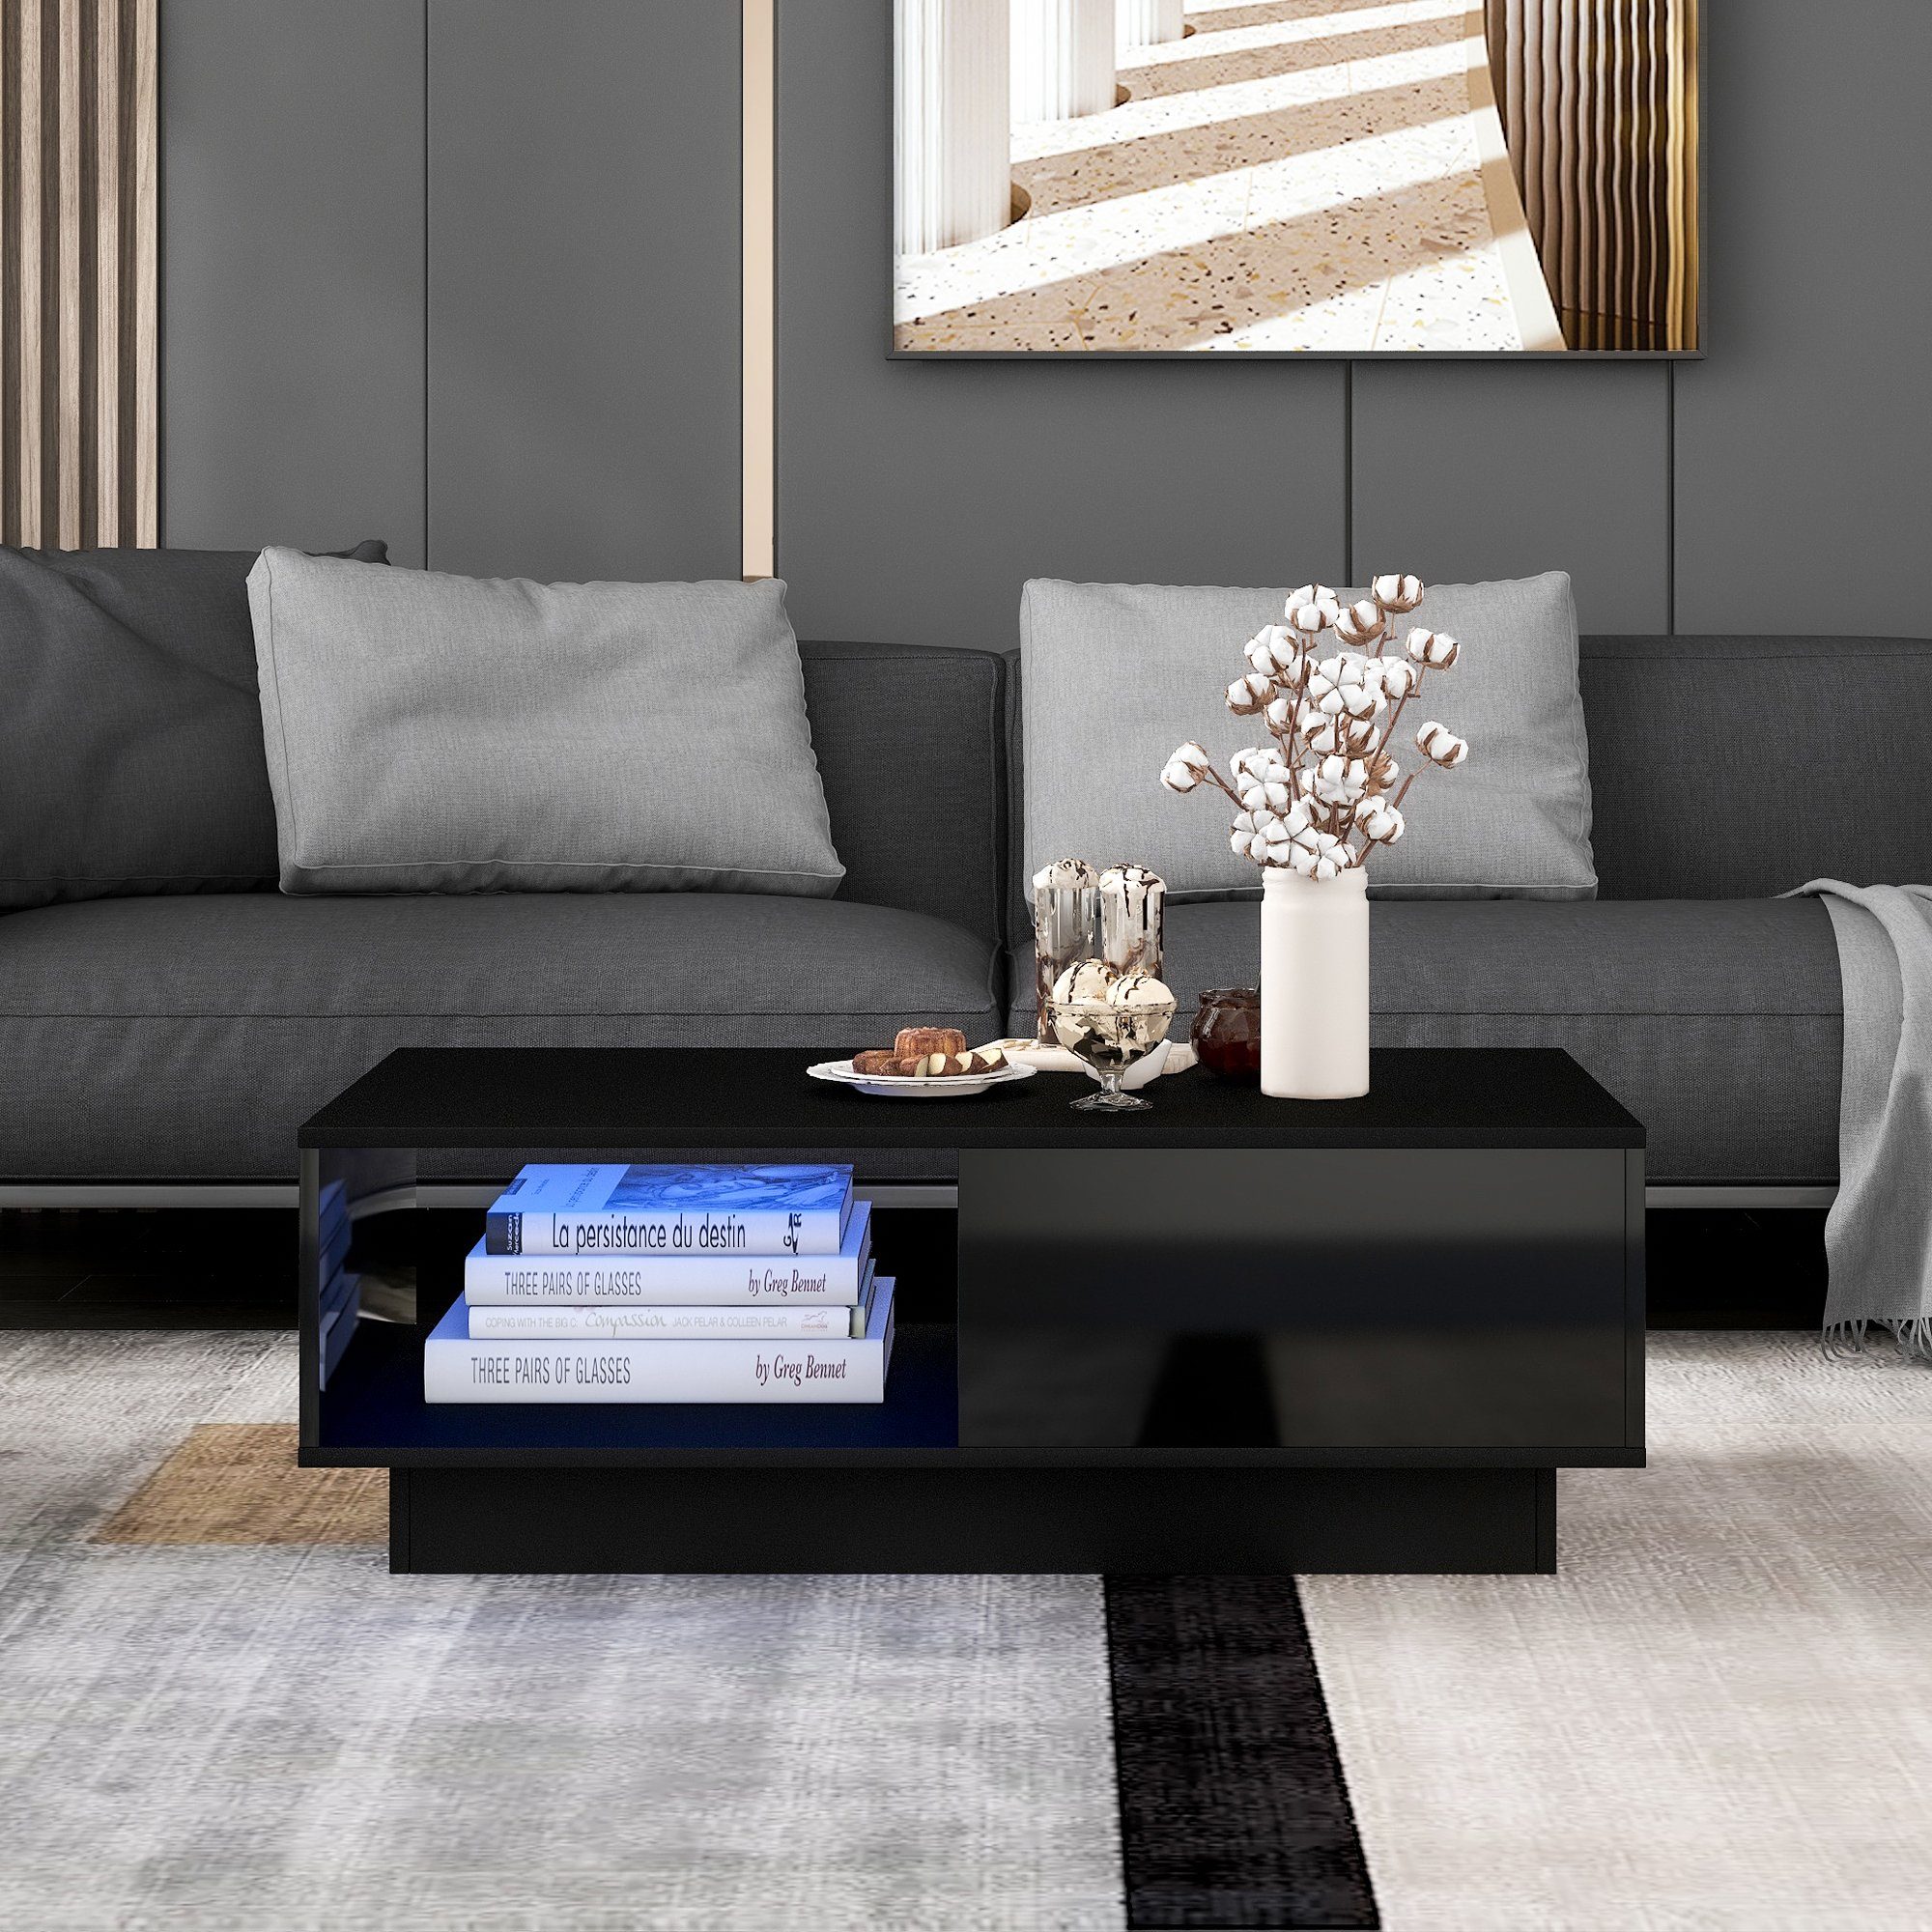 Merax Couchtisch inkl. Fernbedienung, Farben 15 Schwarz großen mit und mit hochglanz Wohnzimmertisch Stauraum LED-Beleuchtung Schublade